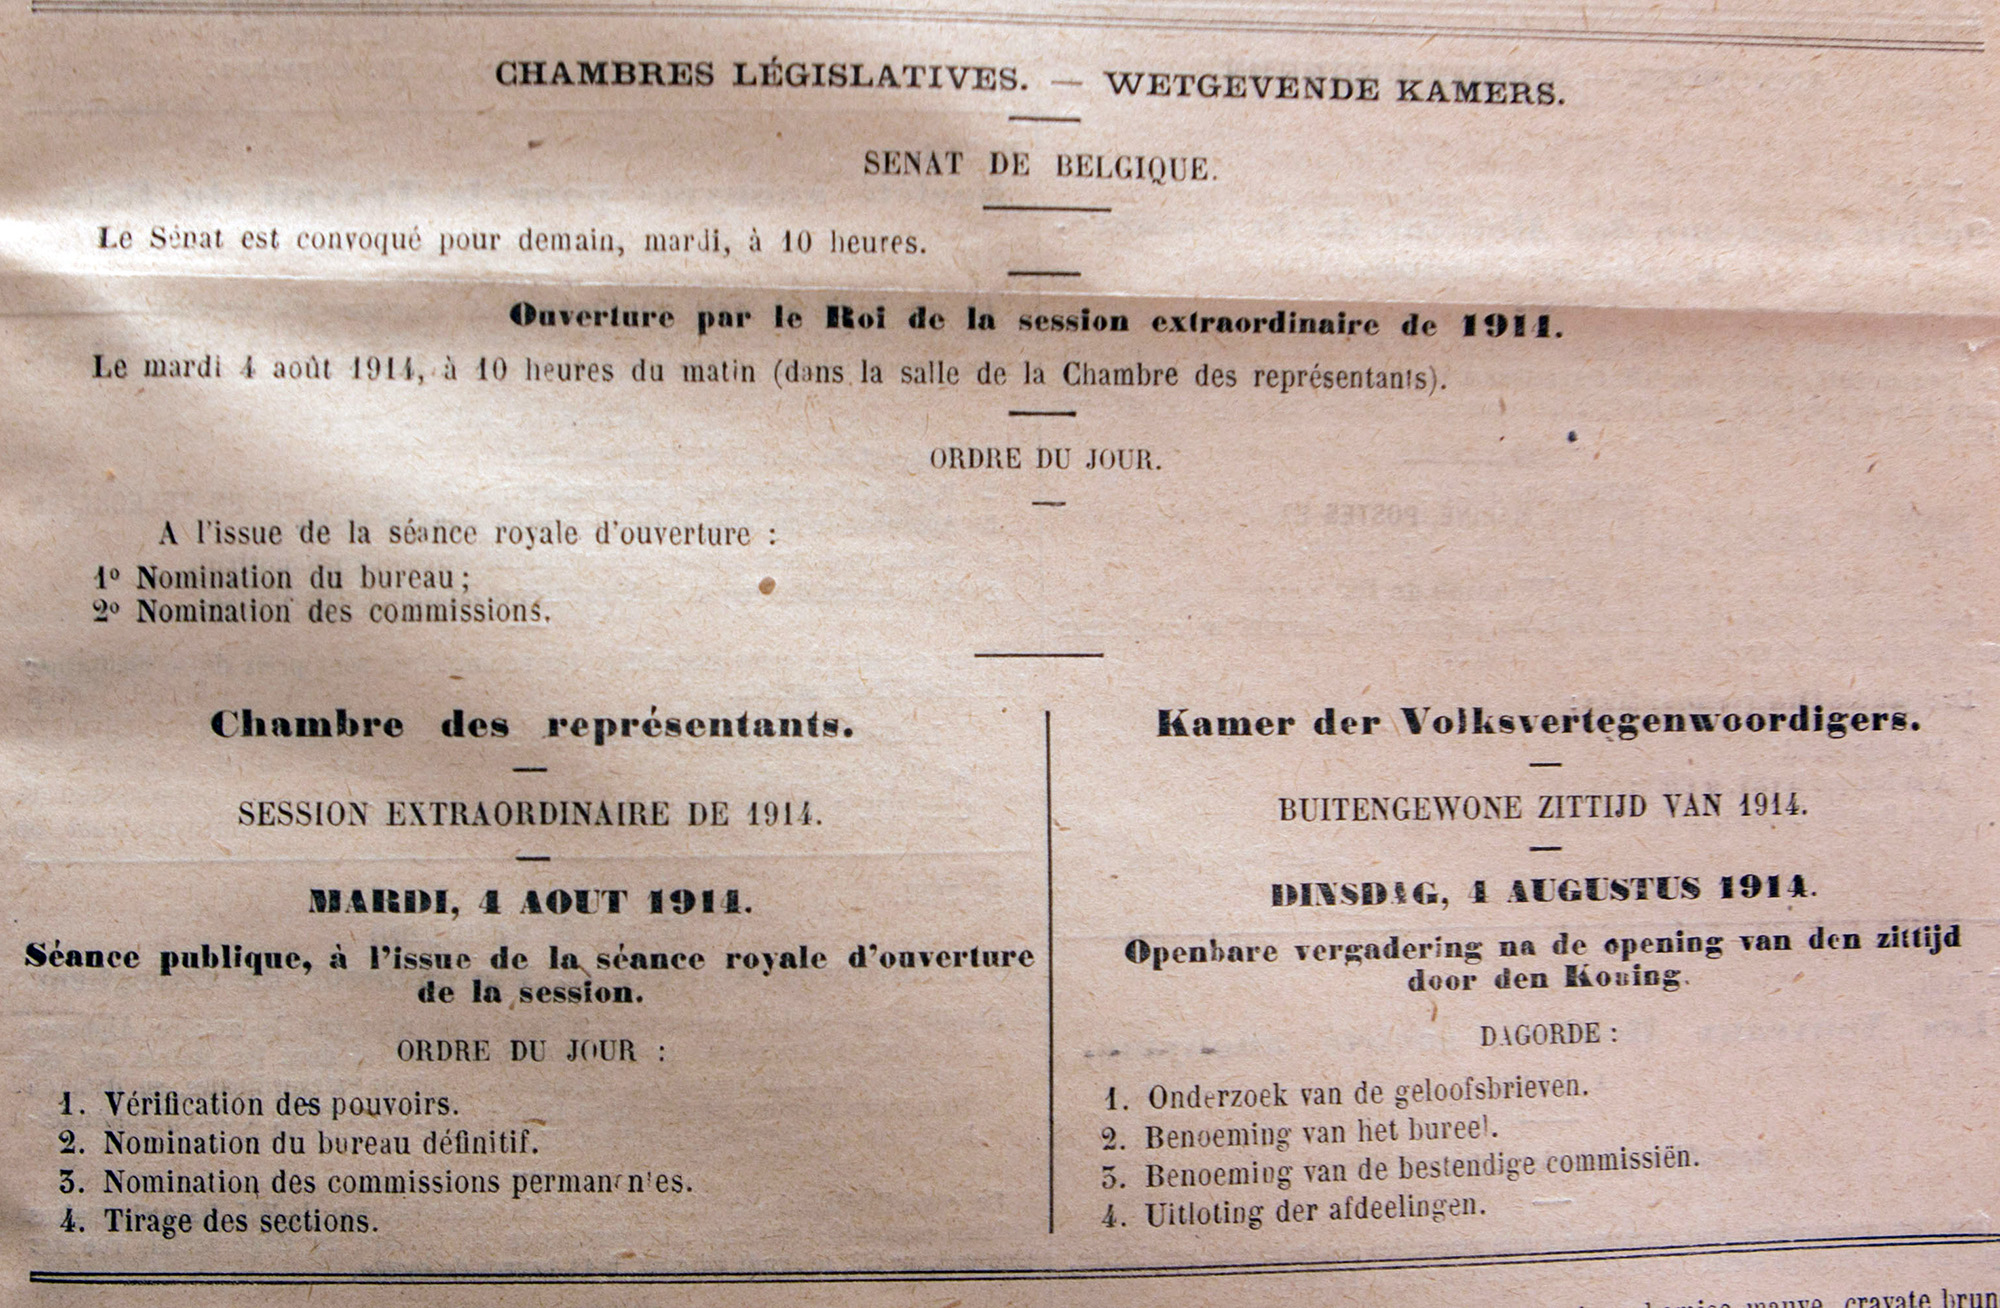 Publication au Moniteur belge du 4 aot 1914